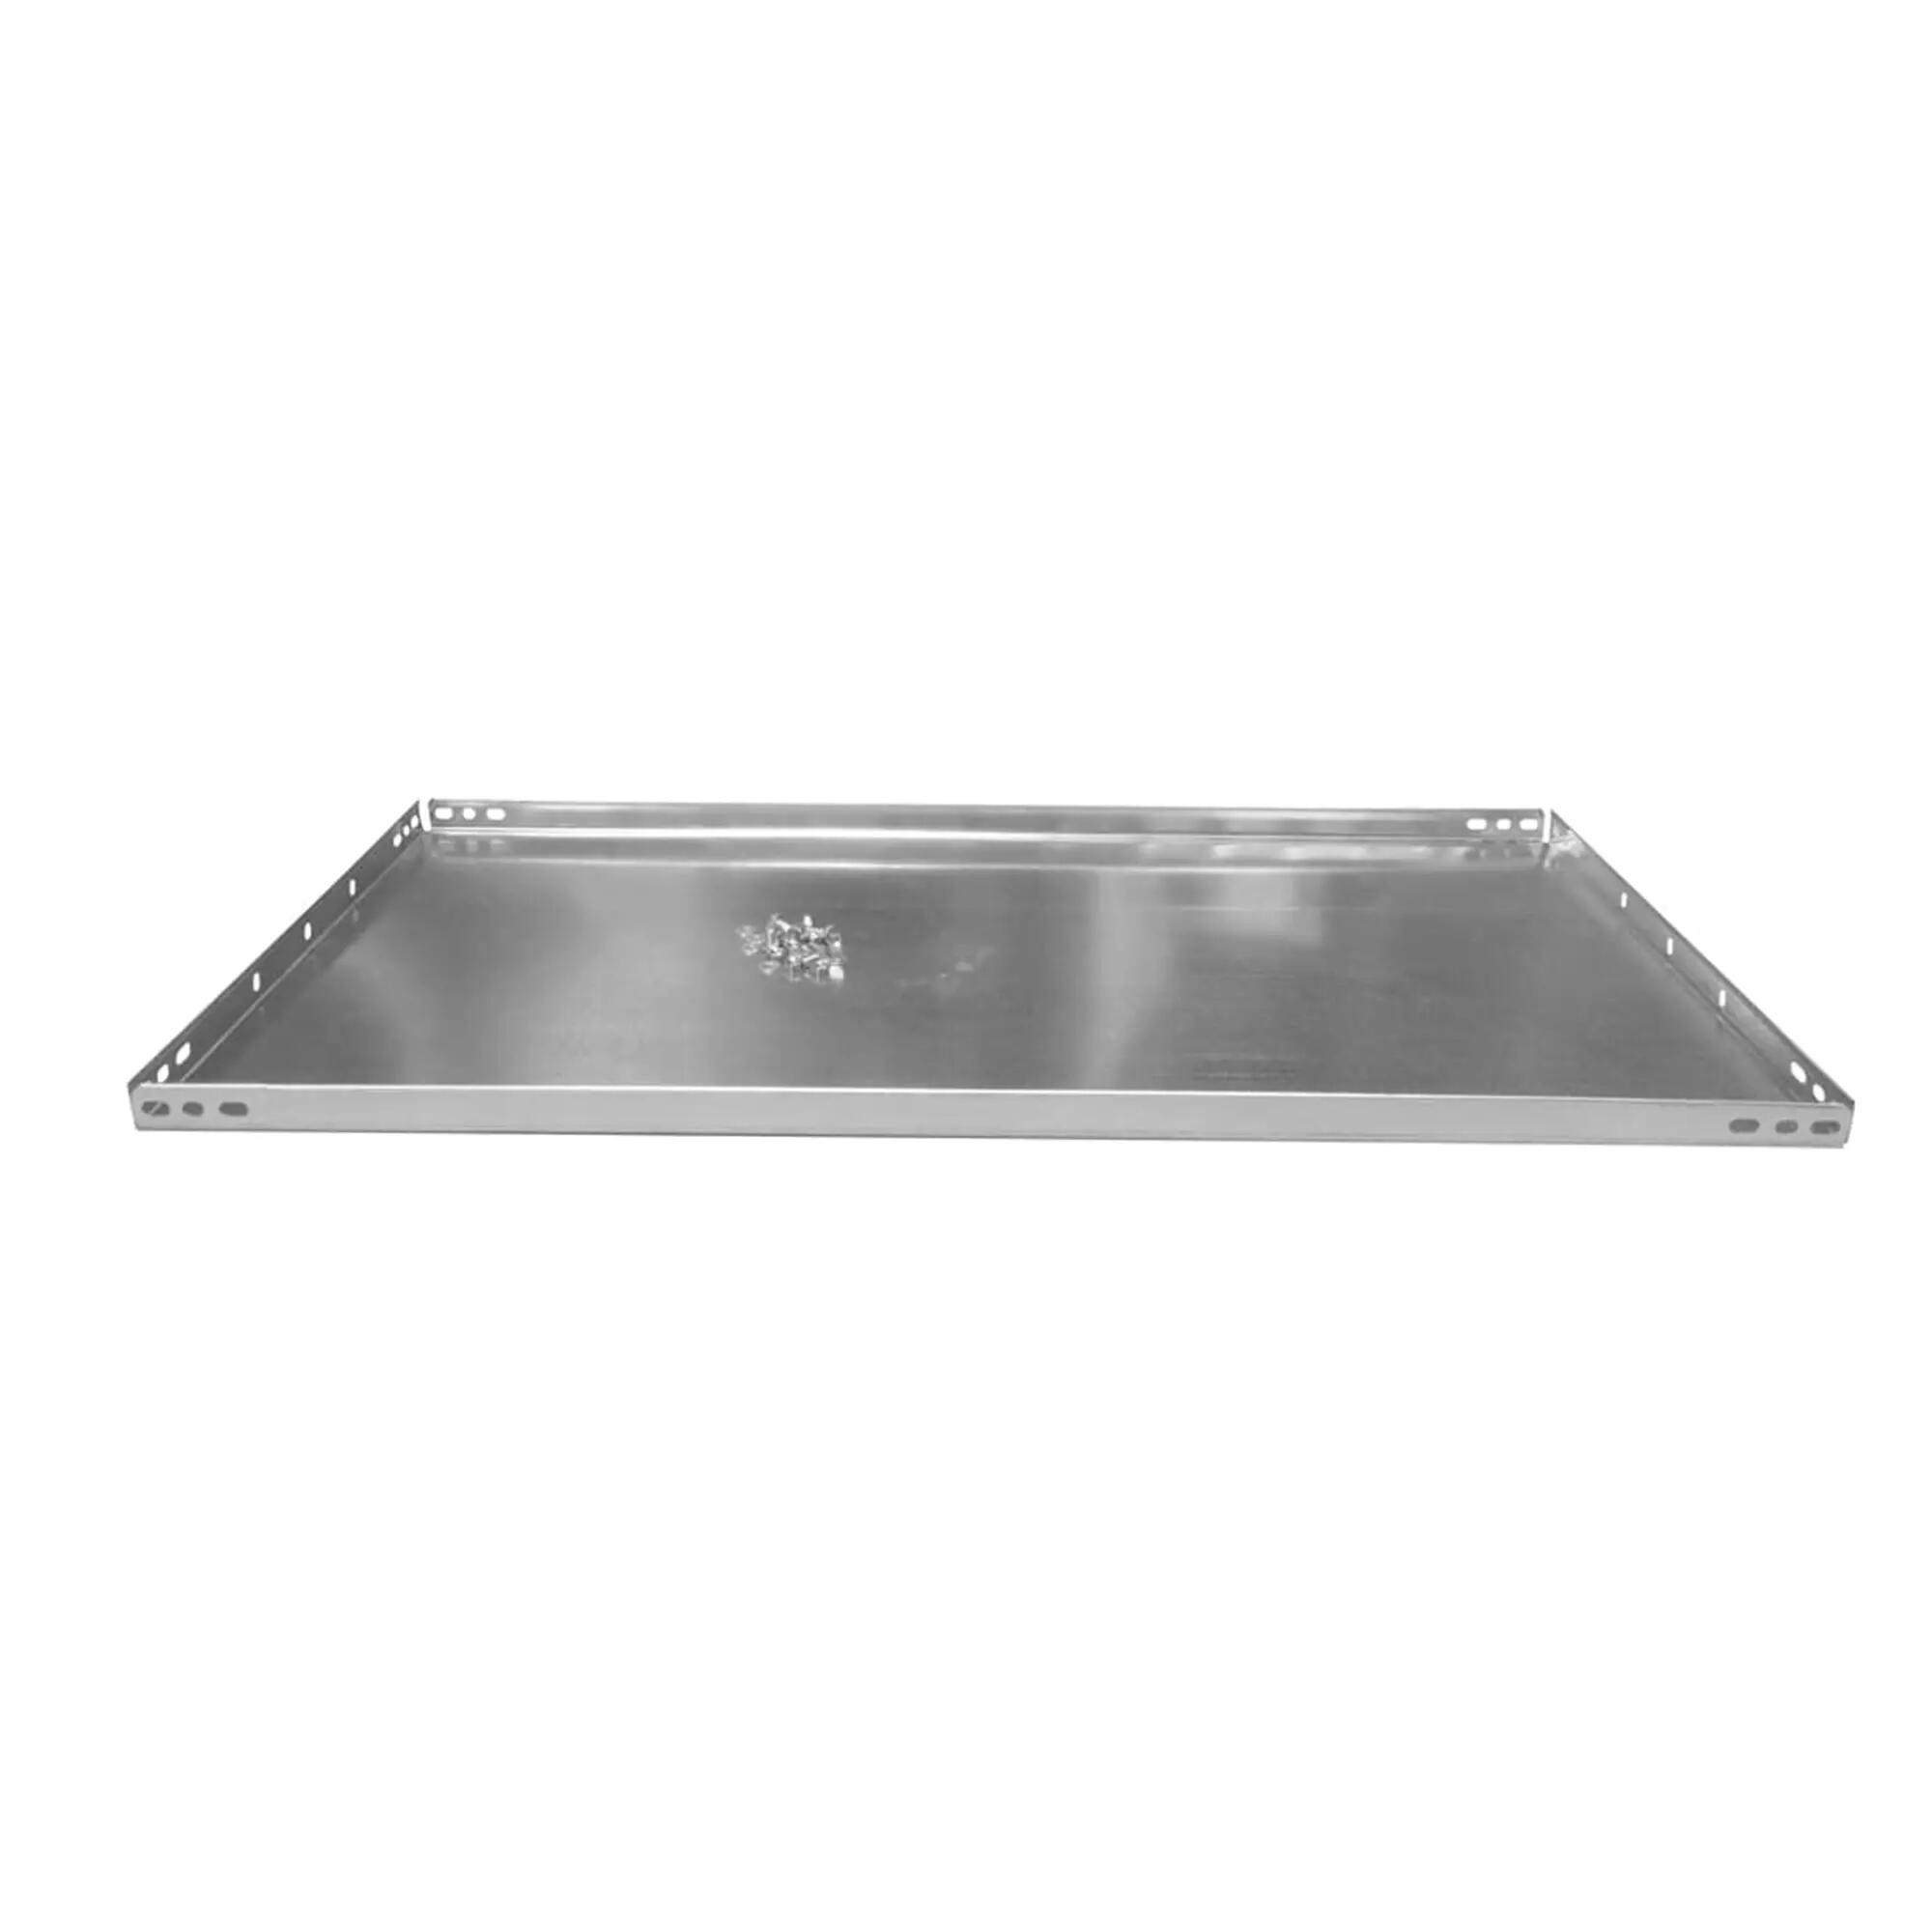 Balda recta para sistema de estantes de acero gris de 80x30cm